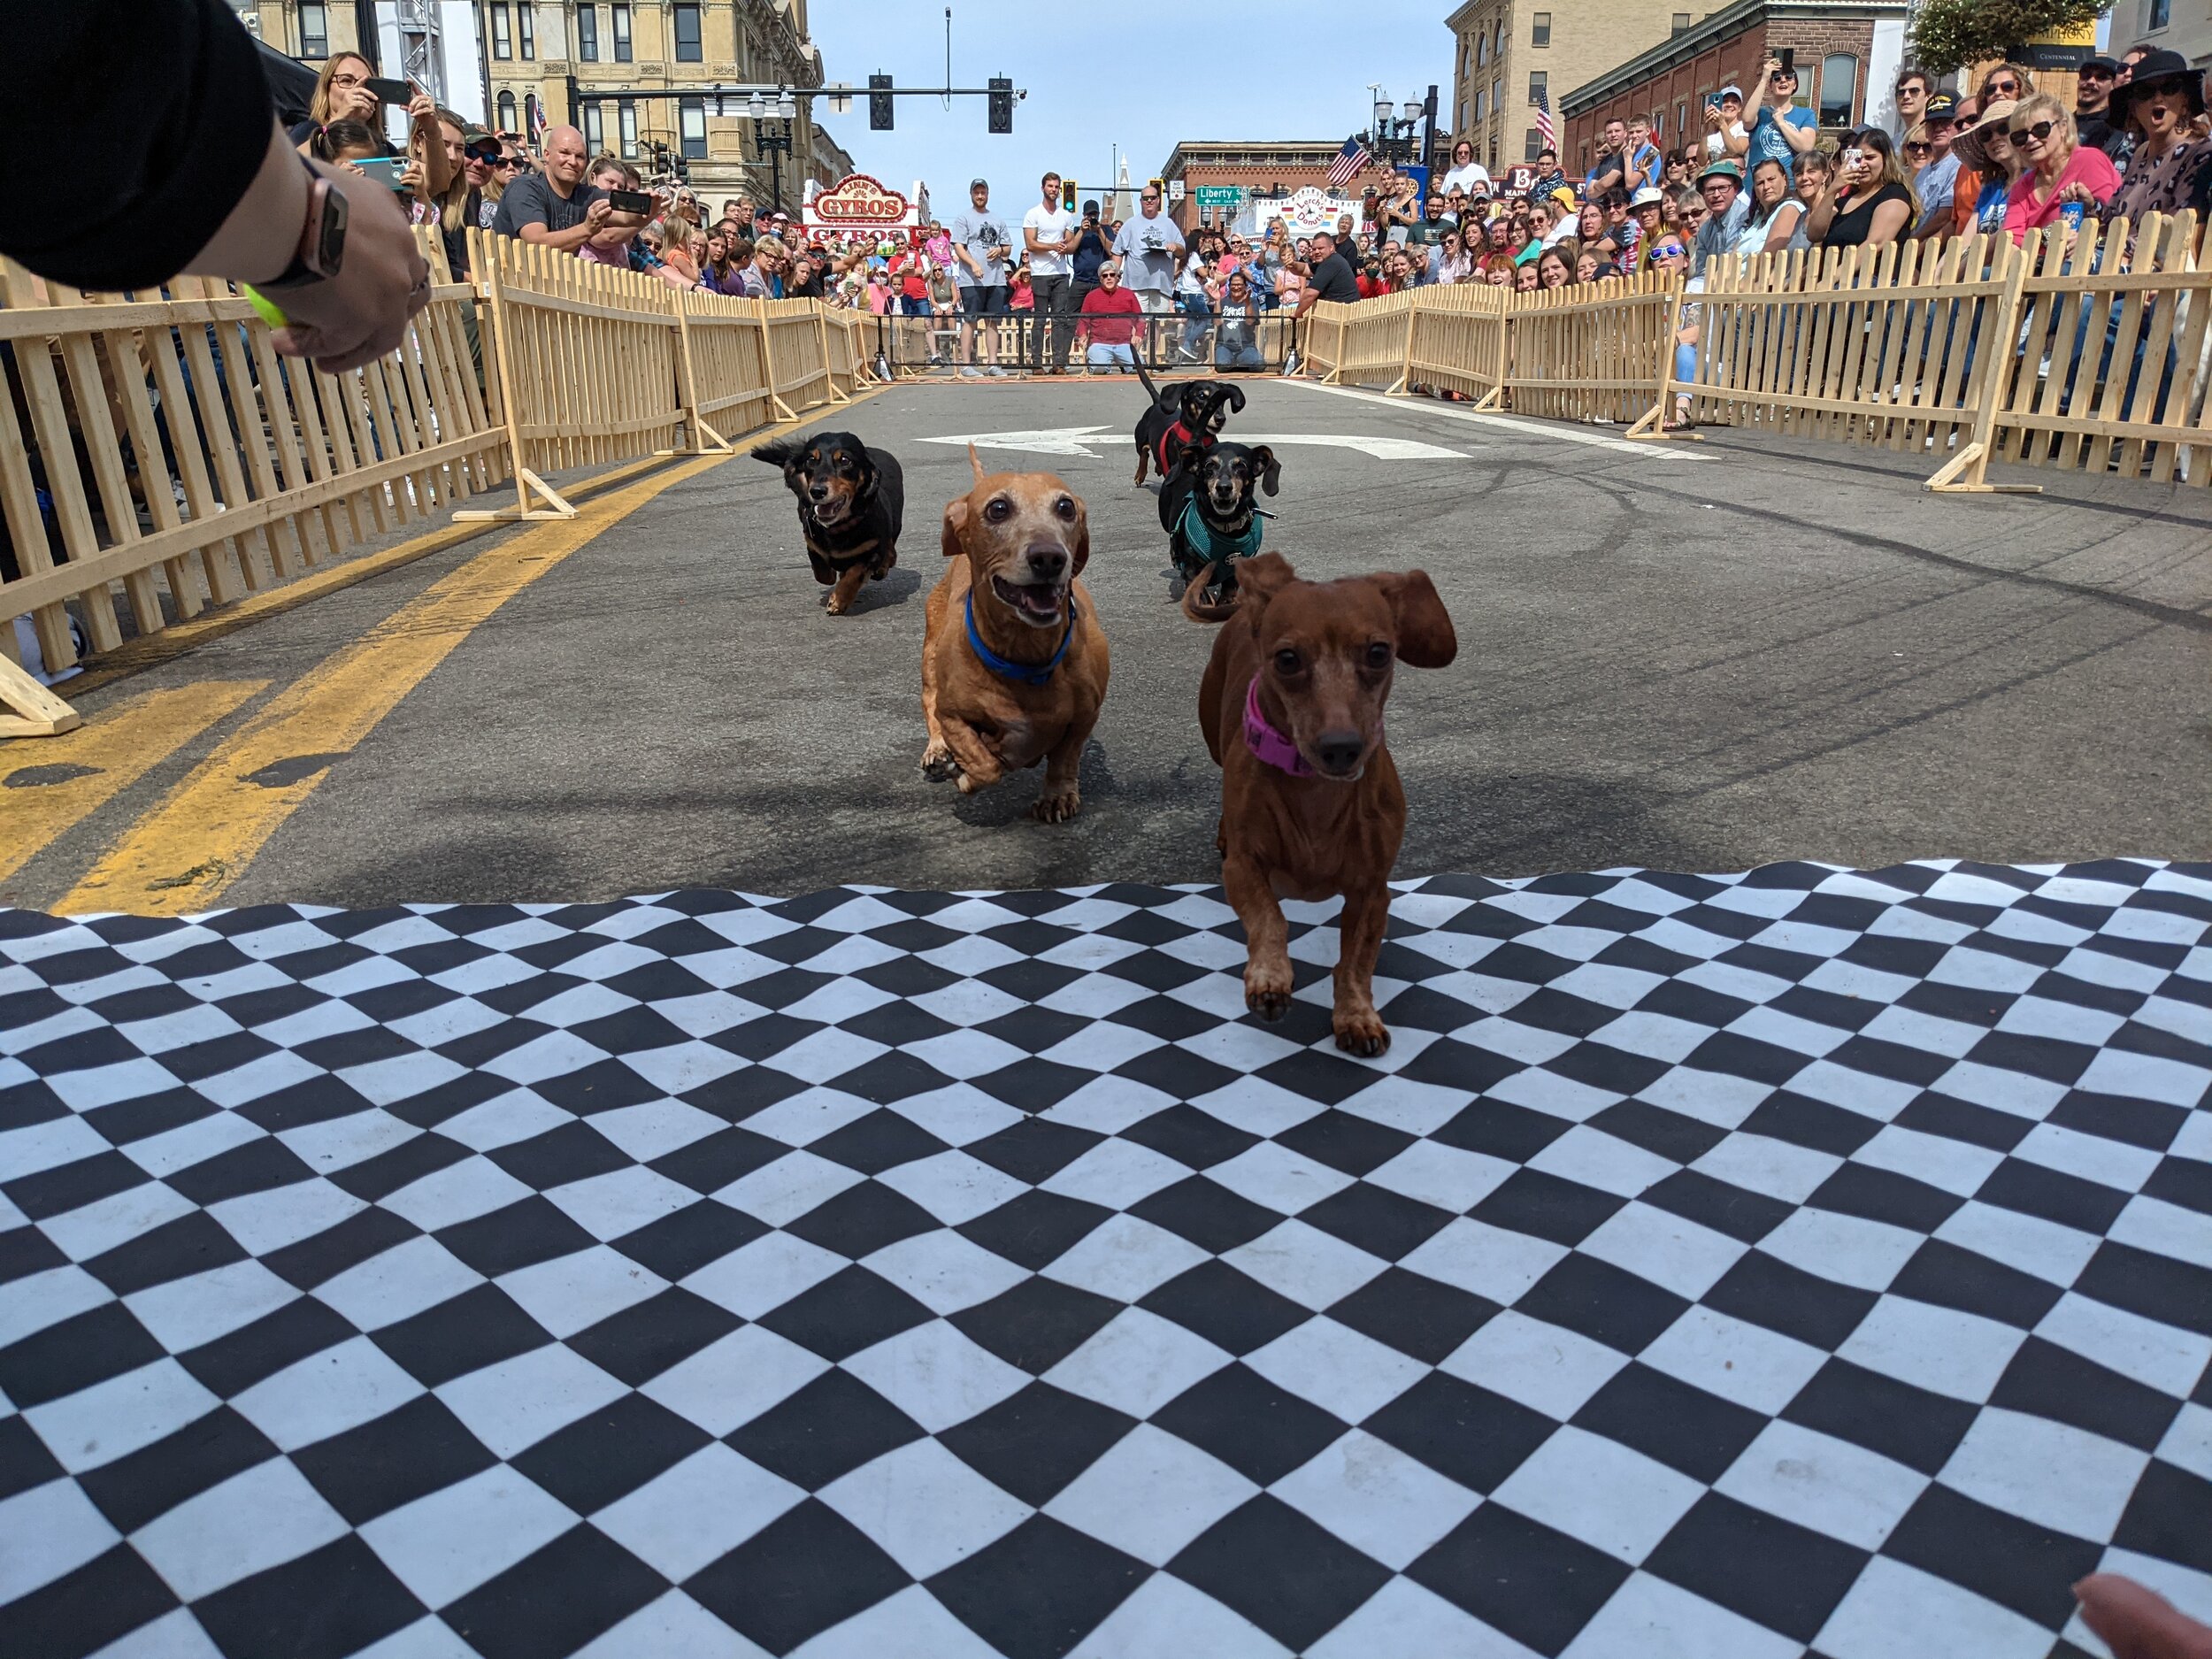 Wiener Dog Race — Woosterfest